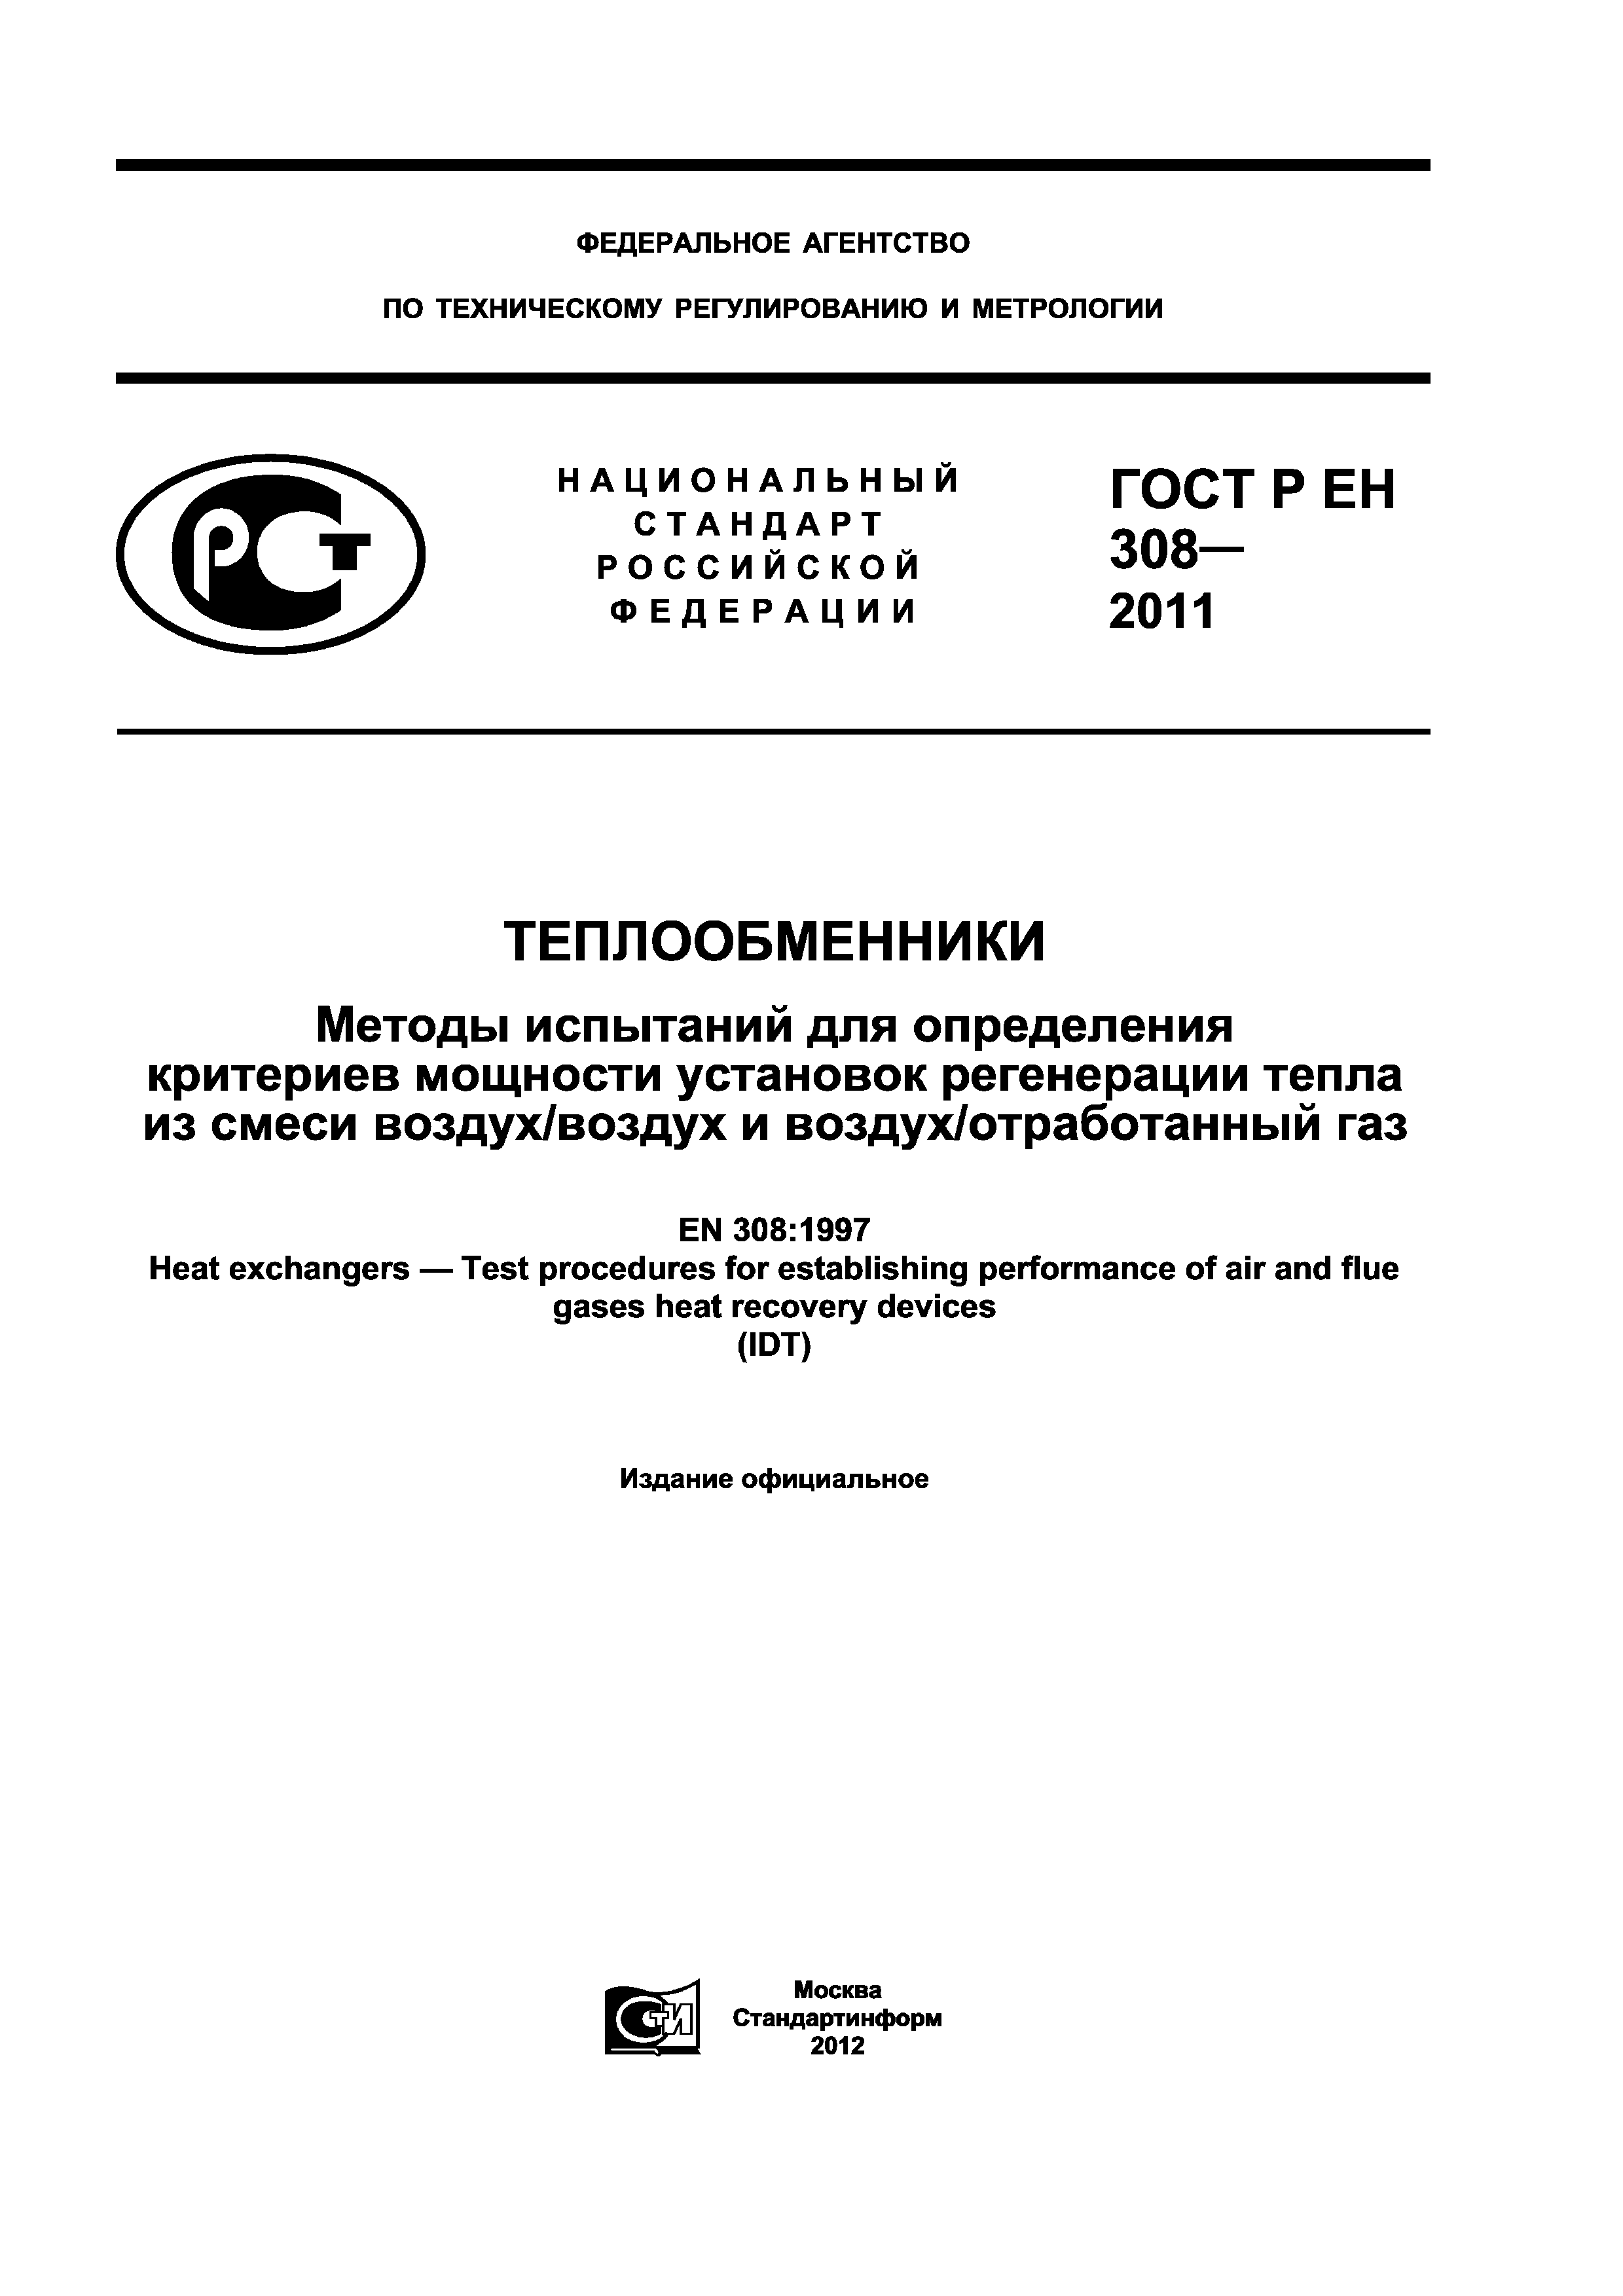 ГОСТ Р ЕН 308-2011